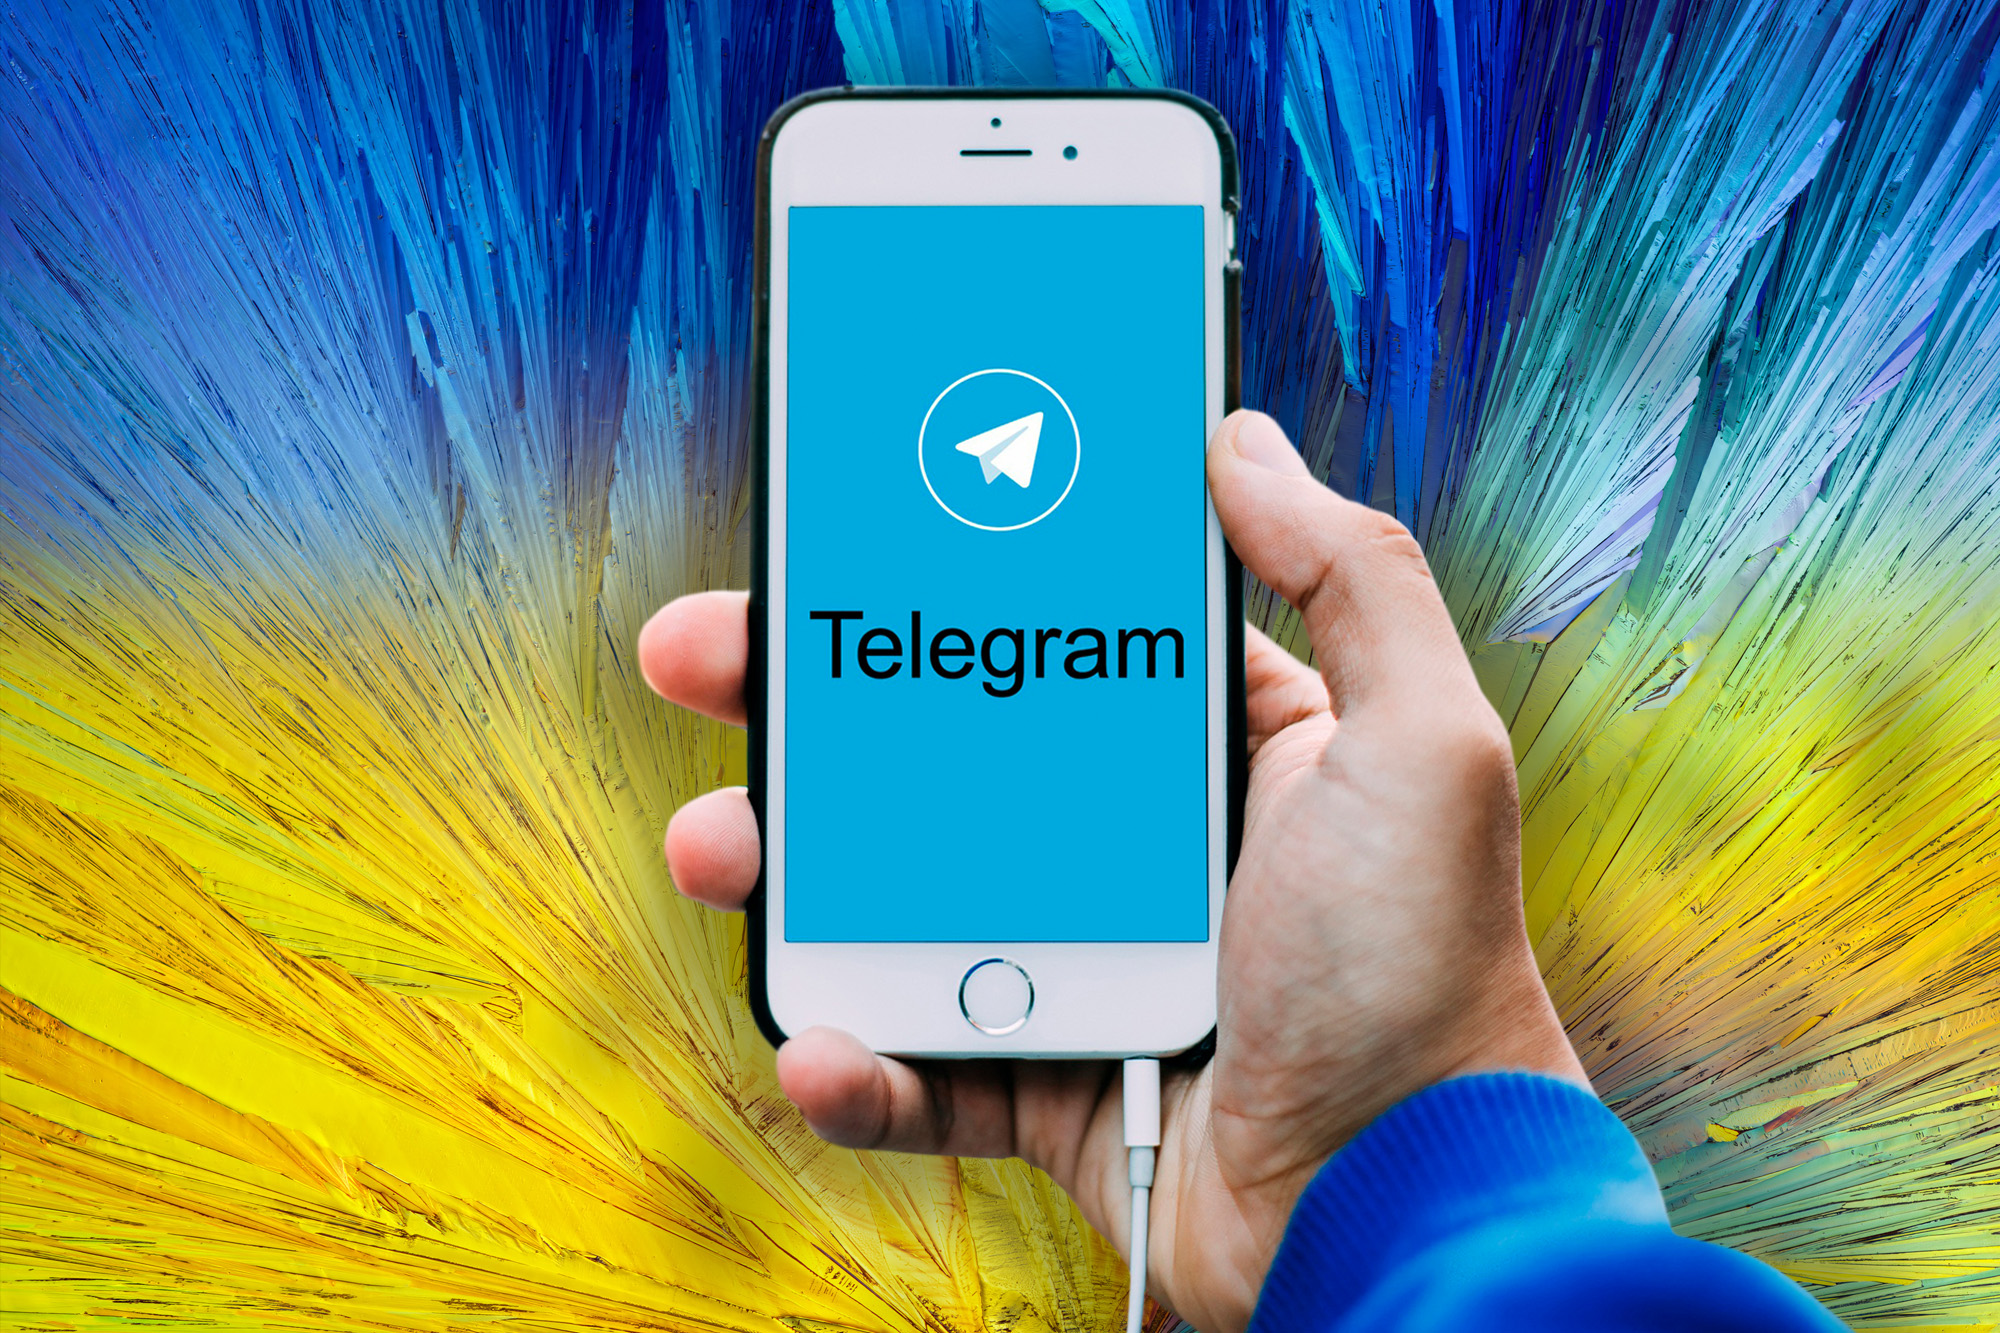 A Look Inside a Pro-Russia Telegram Channel